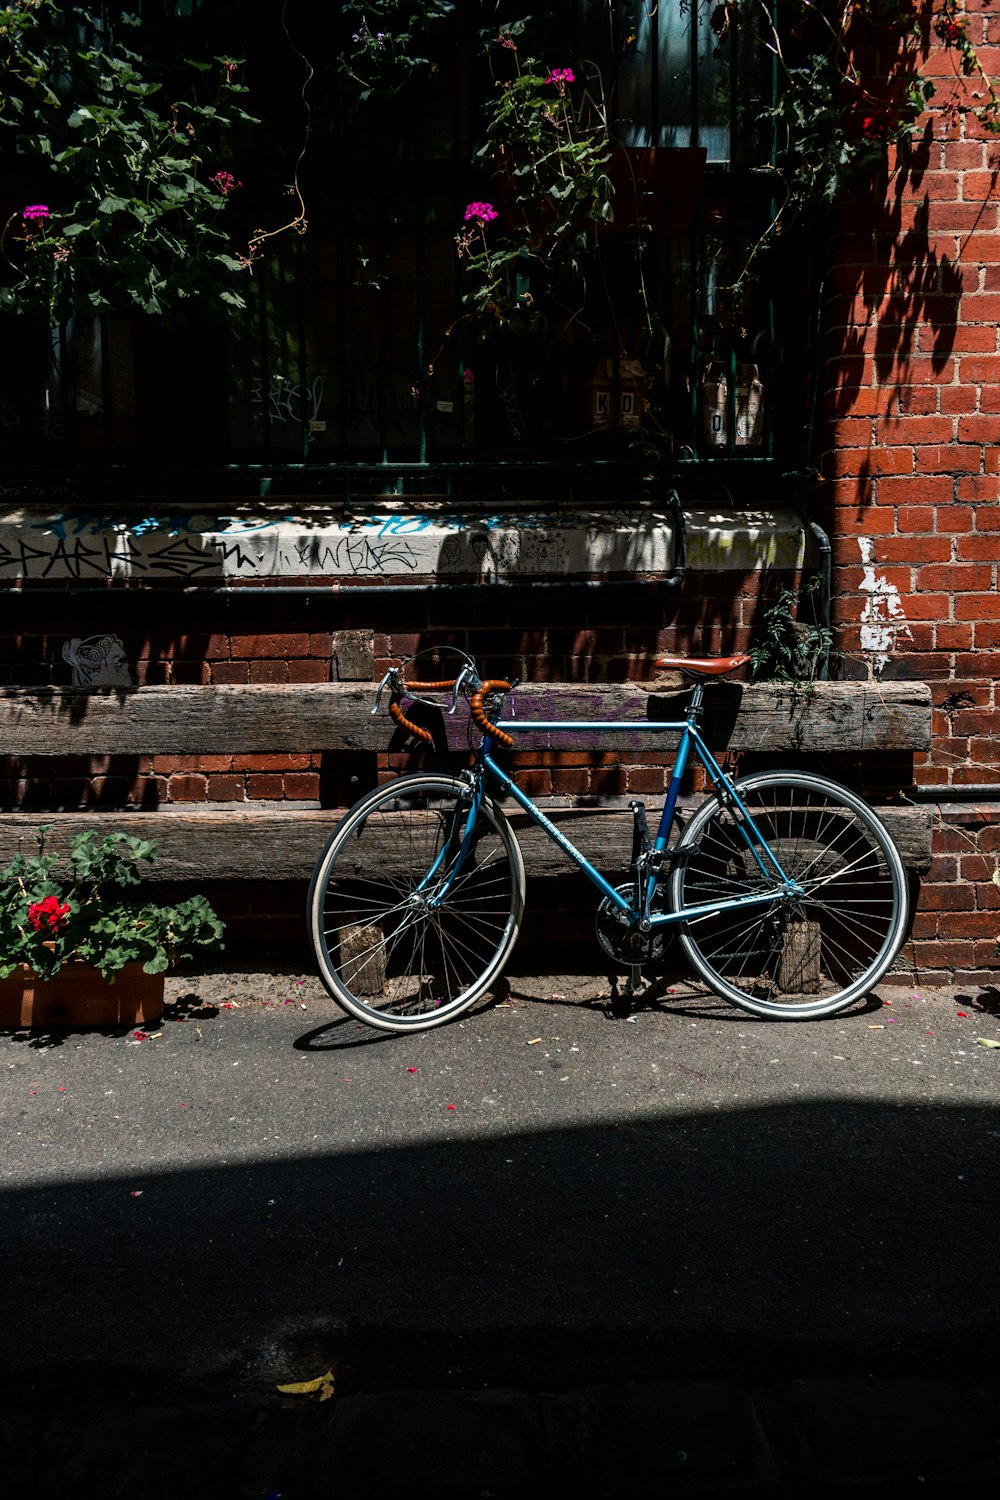 blue road bike parking near wooden fence